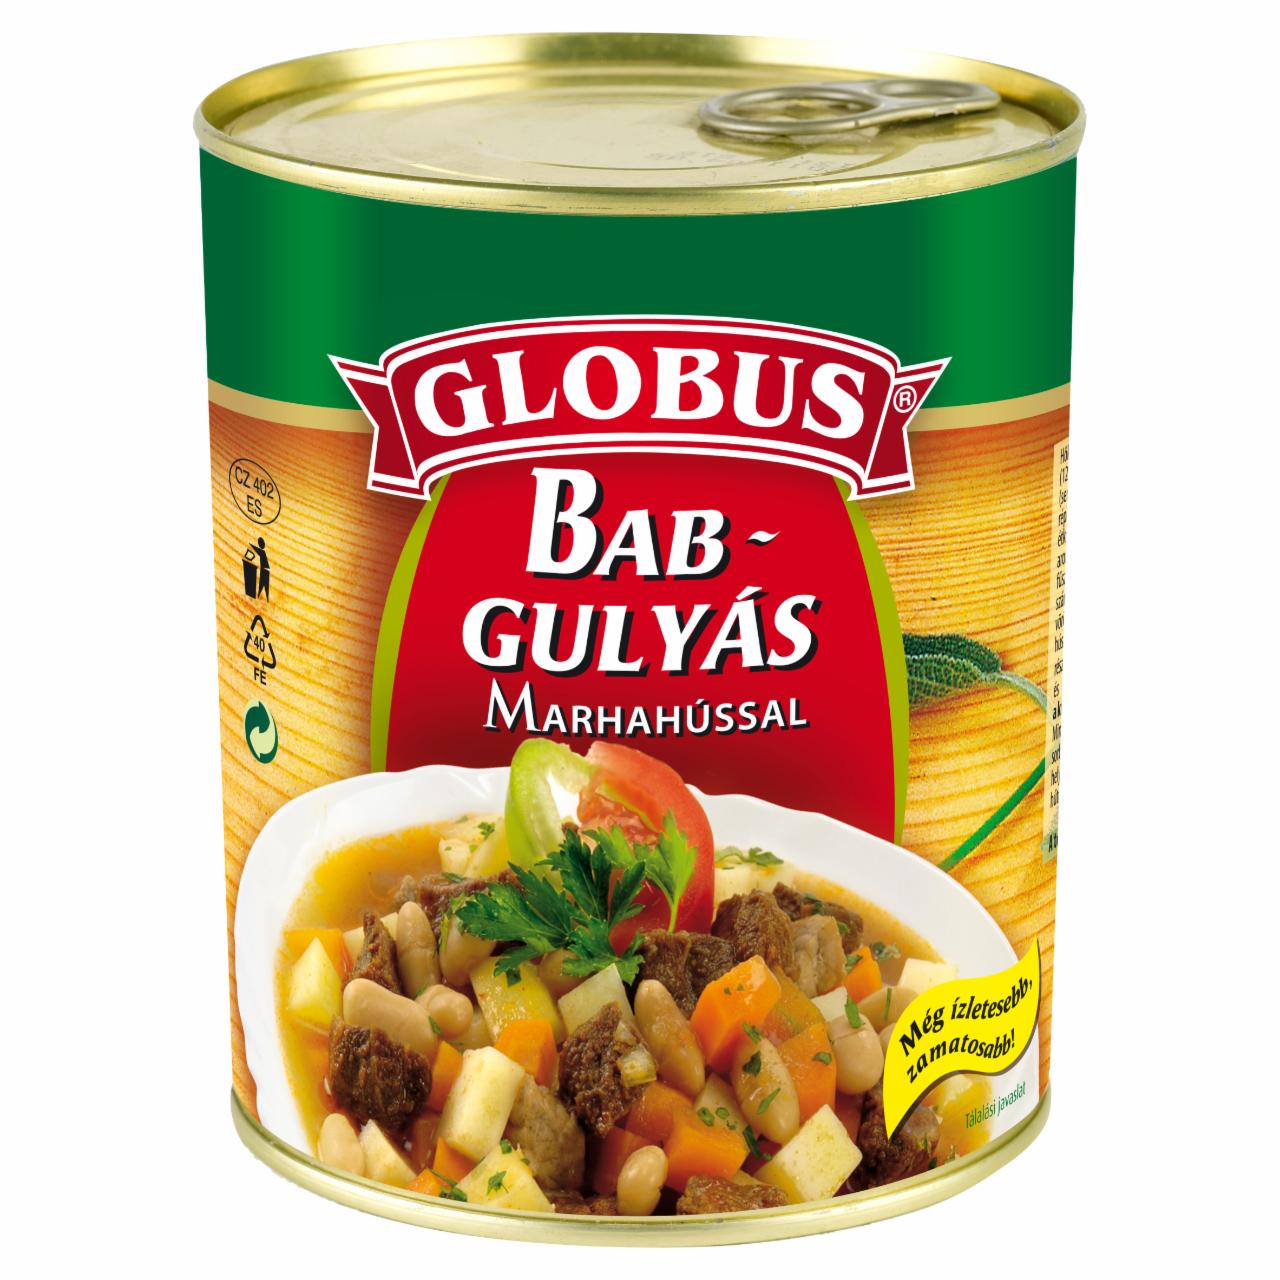 Képek - Globus babgulyás marhahússal 840 g